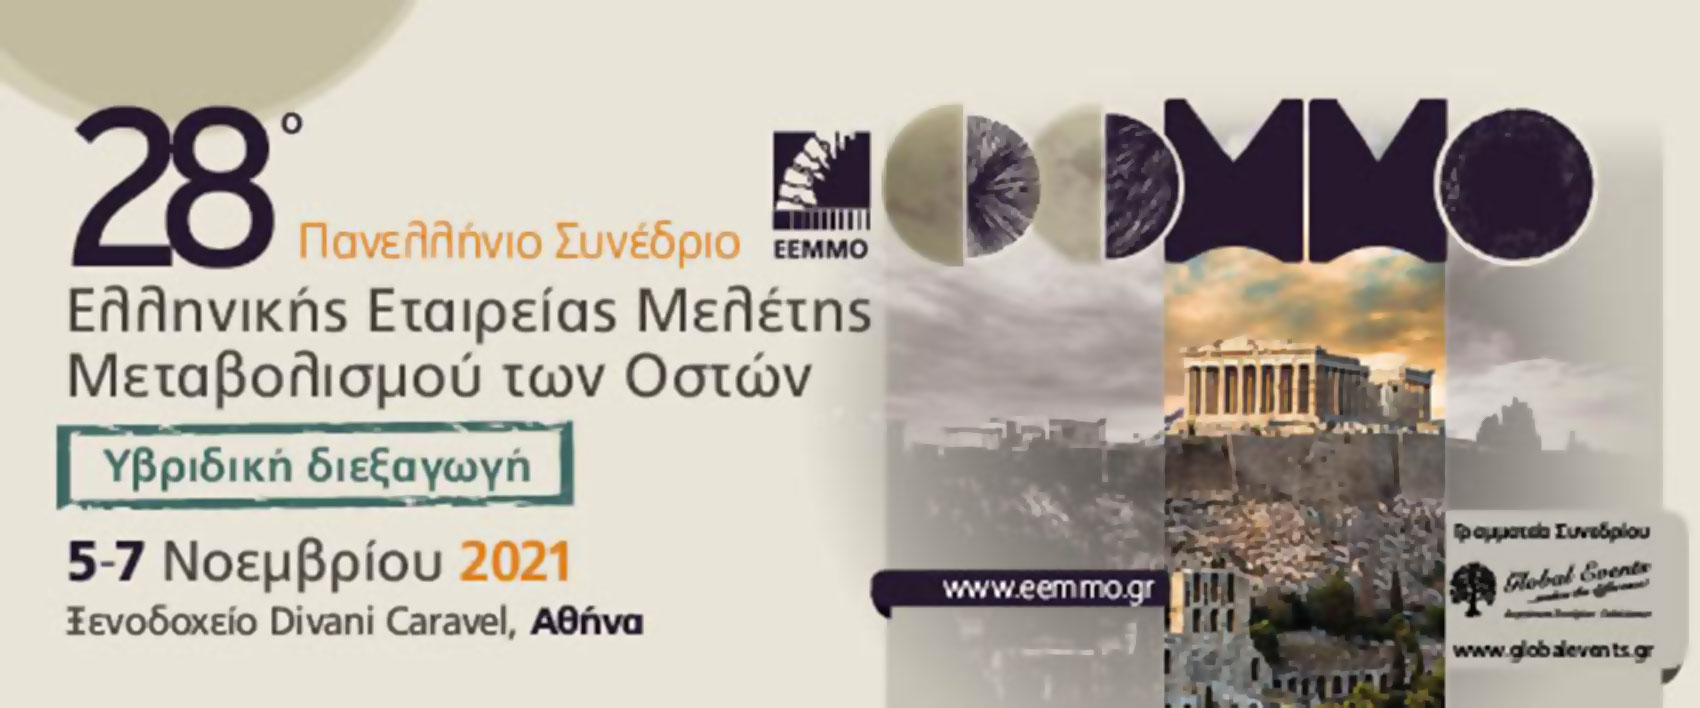 28ο Πανελλήνιο Συνέδριο Ελληνικής Εταιρείας Μελέτης Μεταβολισμού των Οστών